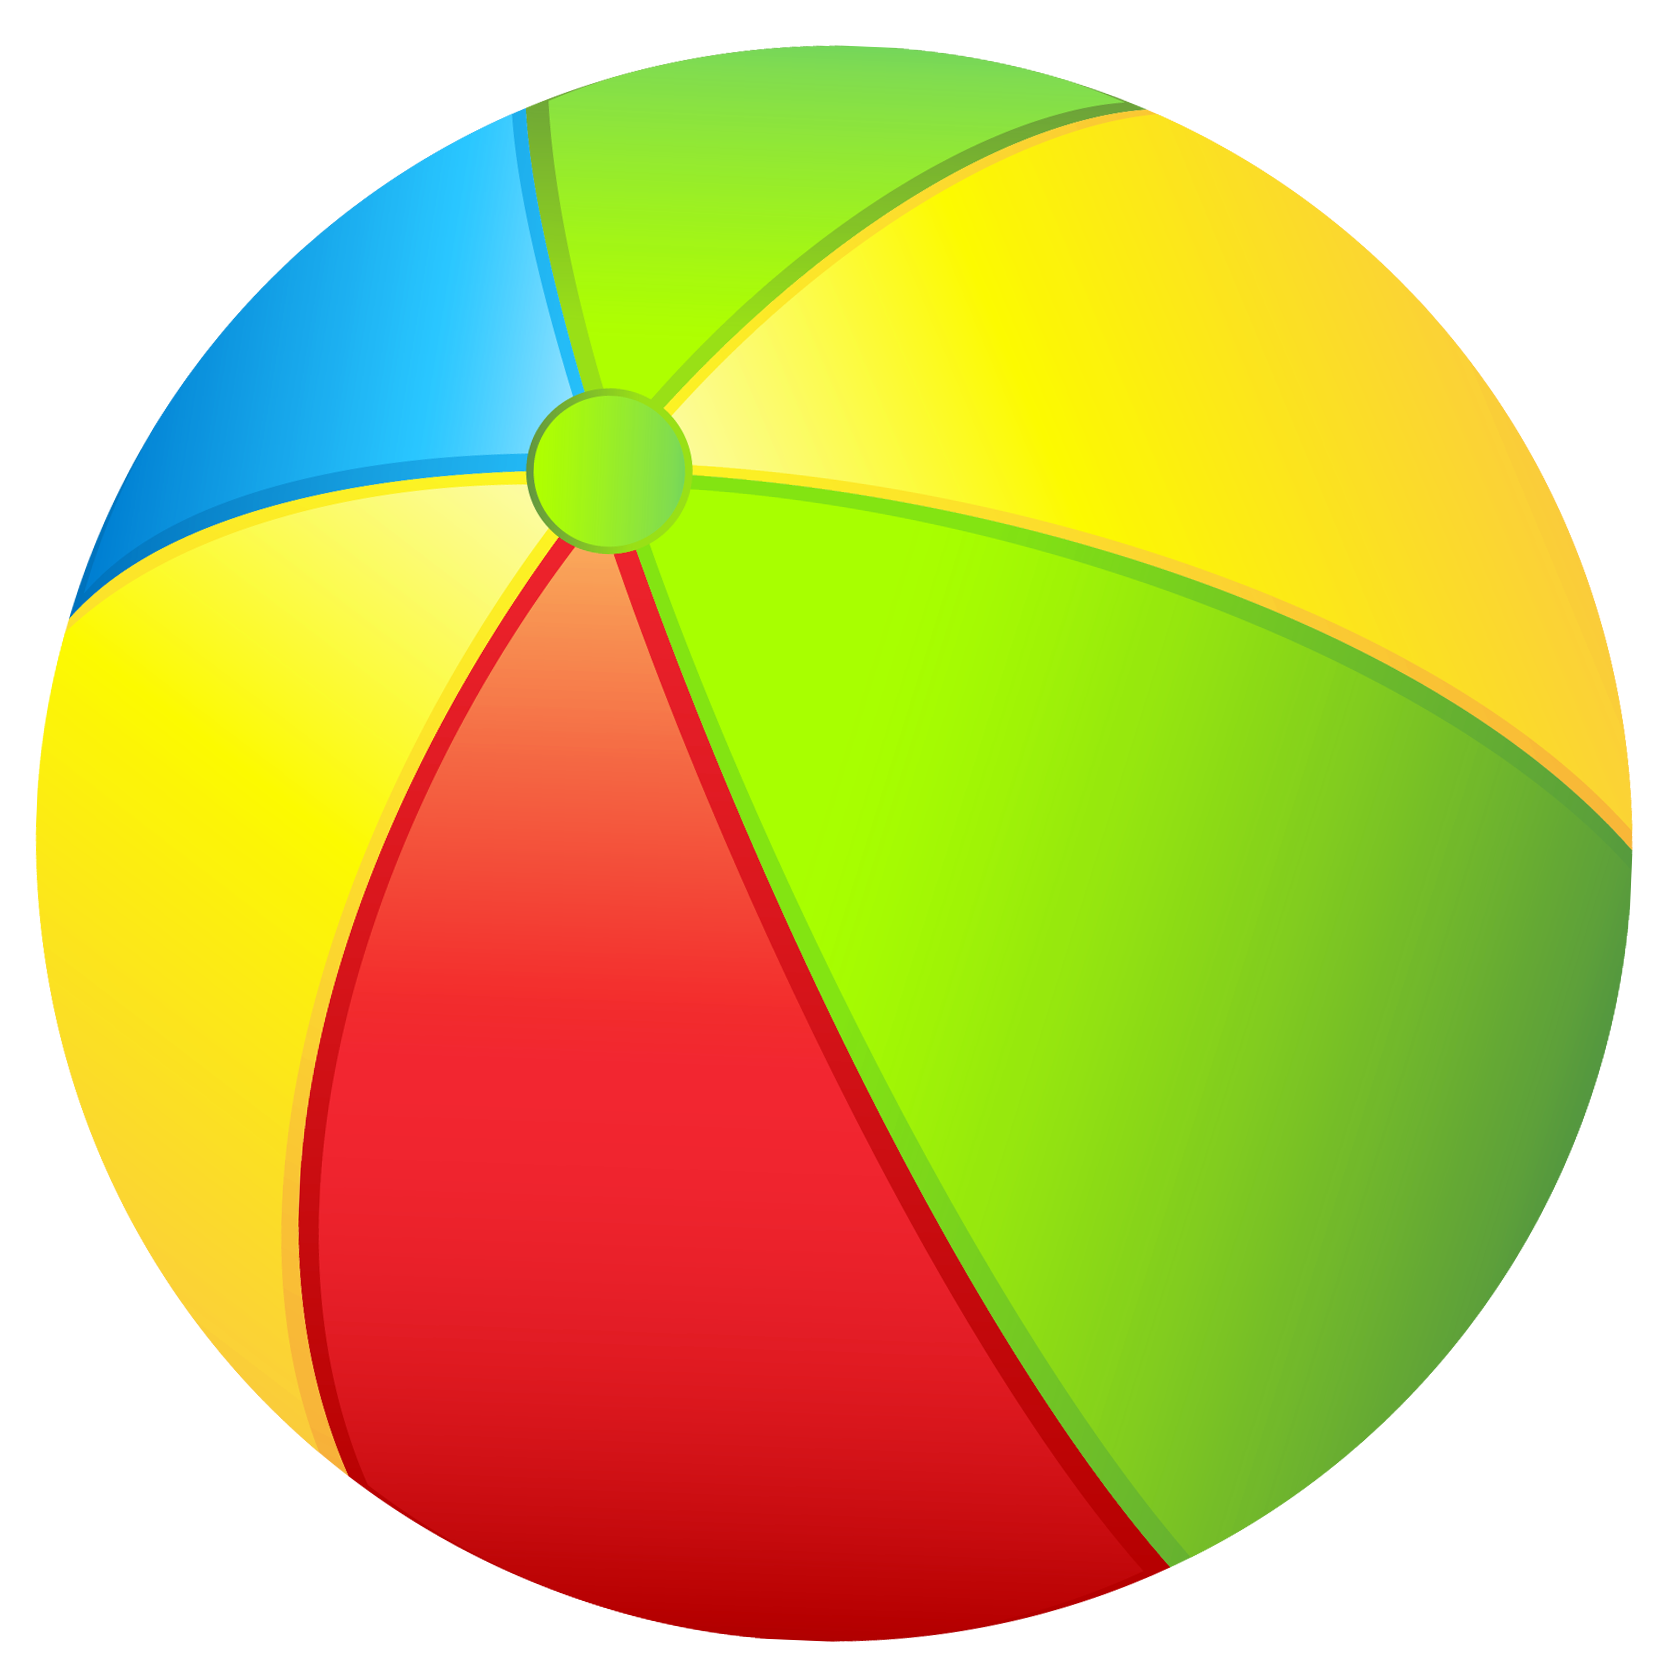 Картинка мяча для детей на прозрачном фоне. Мяч детский. Мячики для детей. Цветные мячики для детей. Детские игрушки мяч.